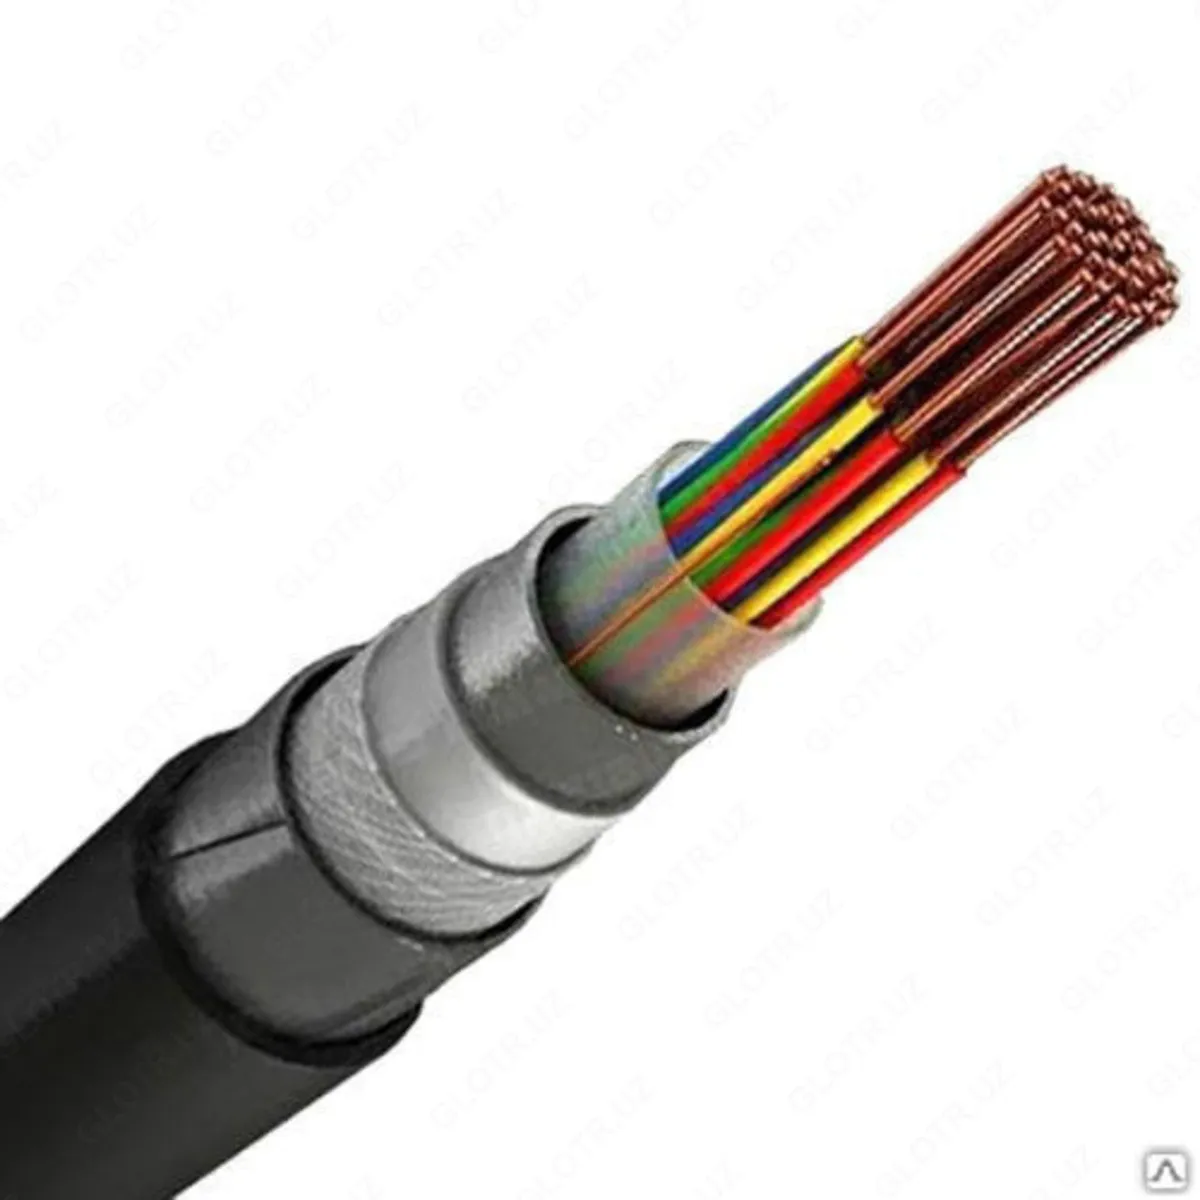 SBPU 30x2x0,9 juft burama signalni blokirovka qiluvchi kabellar#1